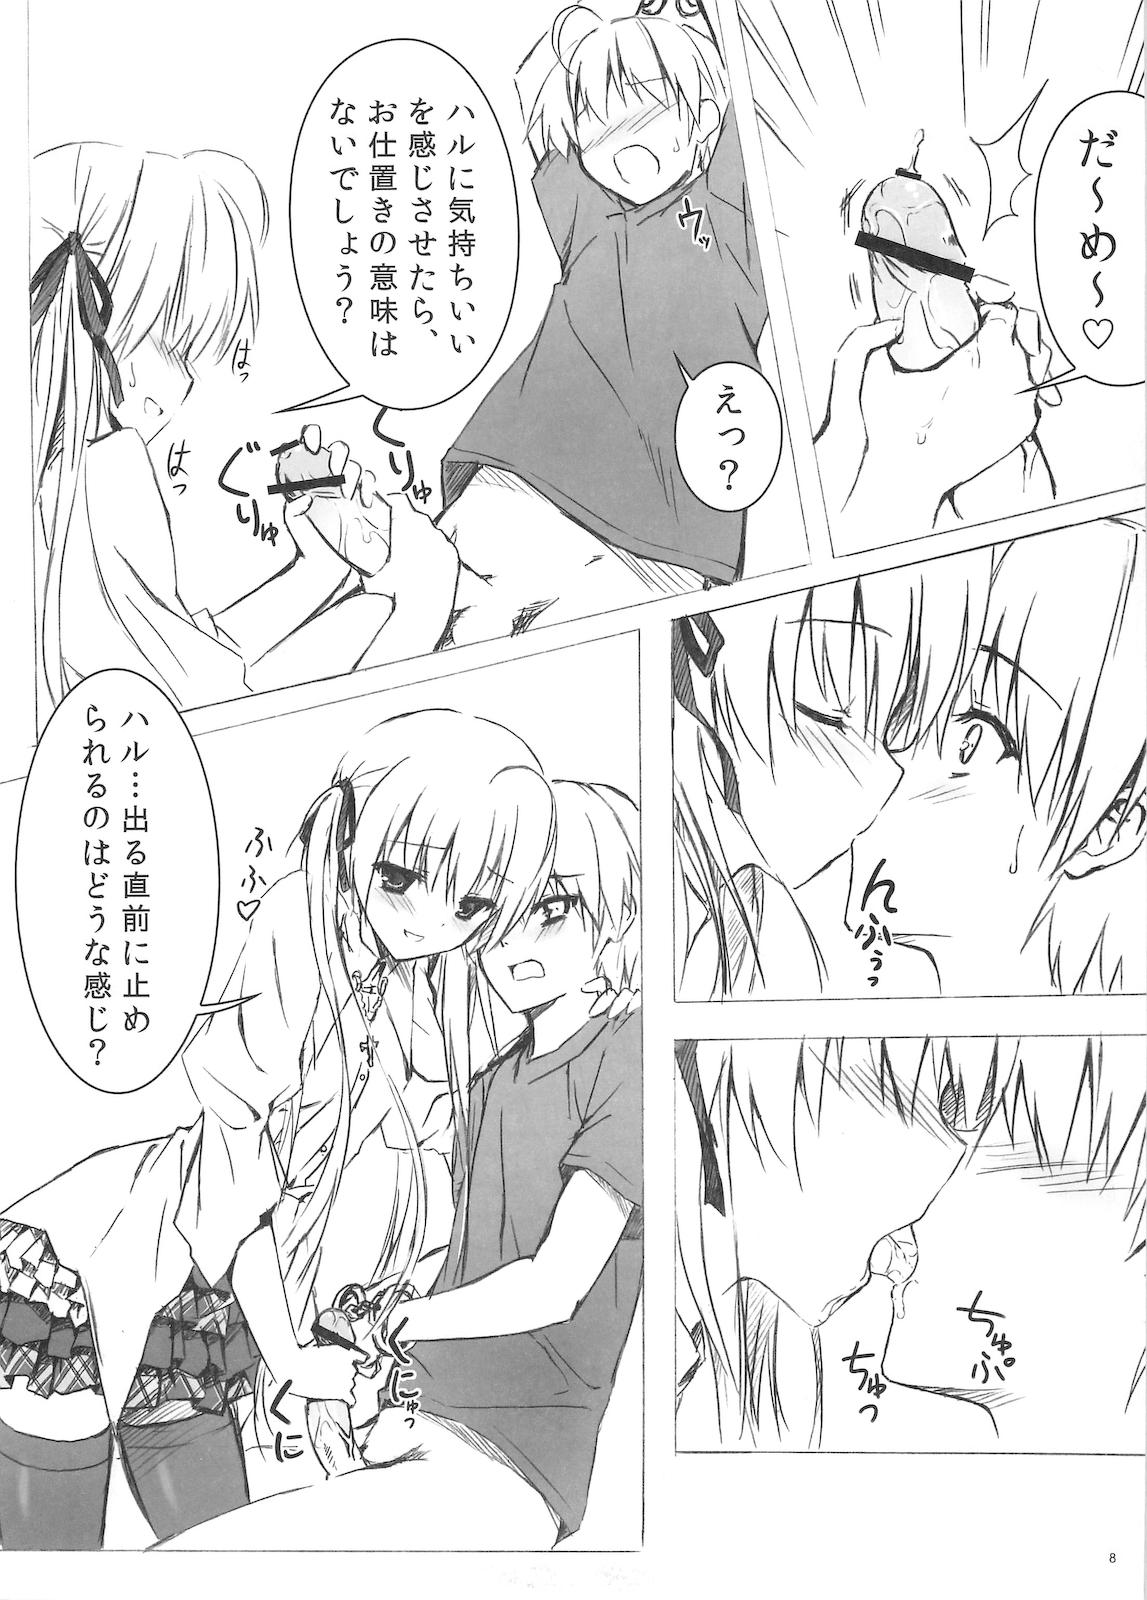 Teenxxx Sora no Omocha - Yosuga no sora Culo - Page 8